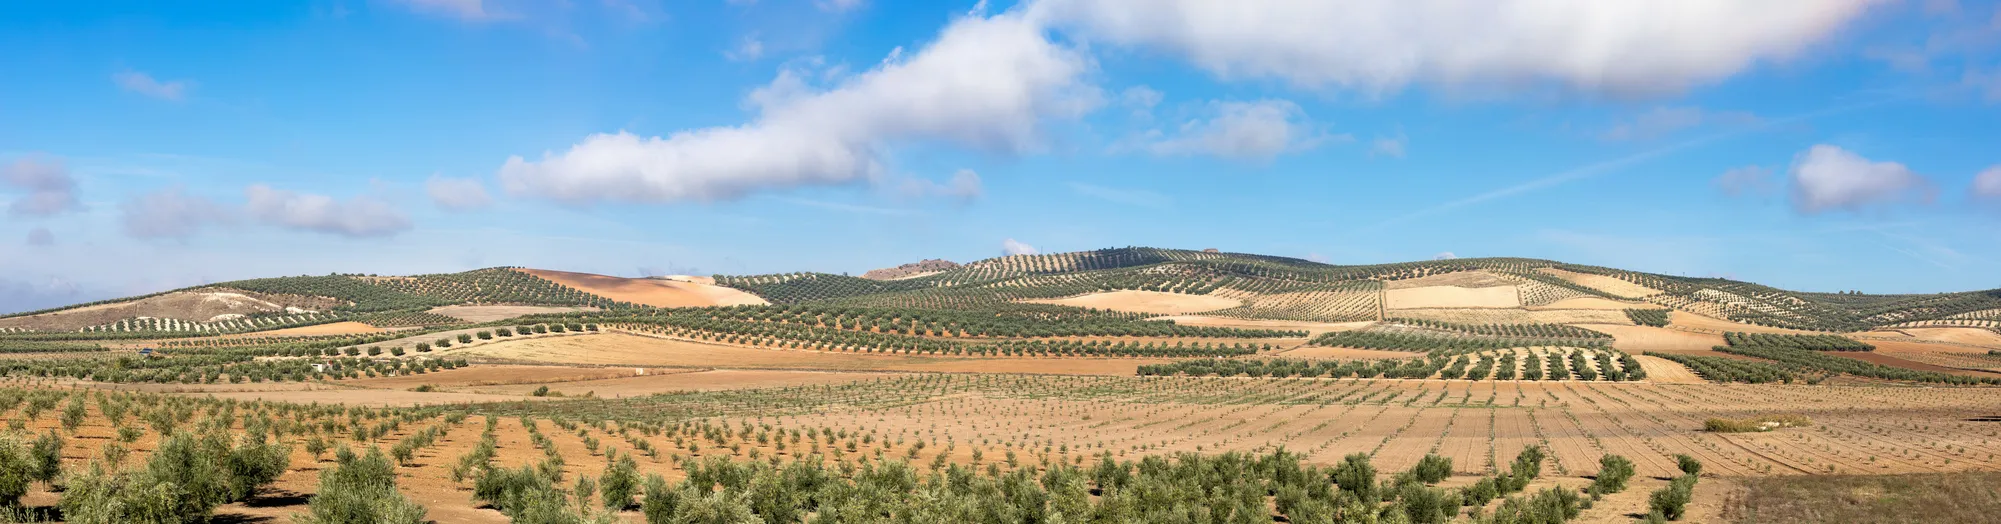 Vue sur les oliveraies en Andalousie © iStock / borchee